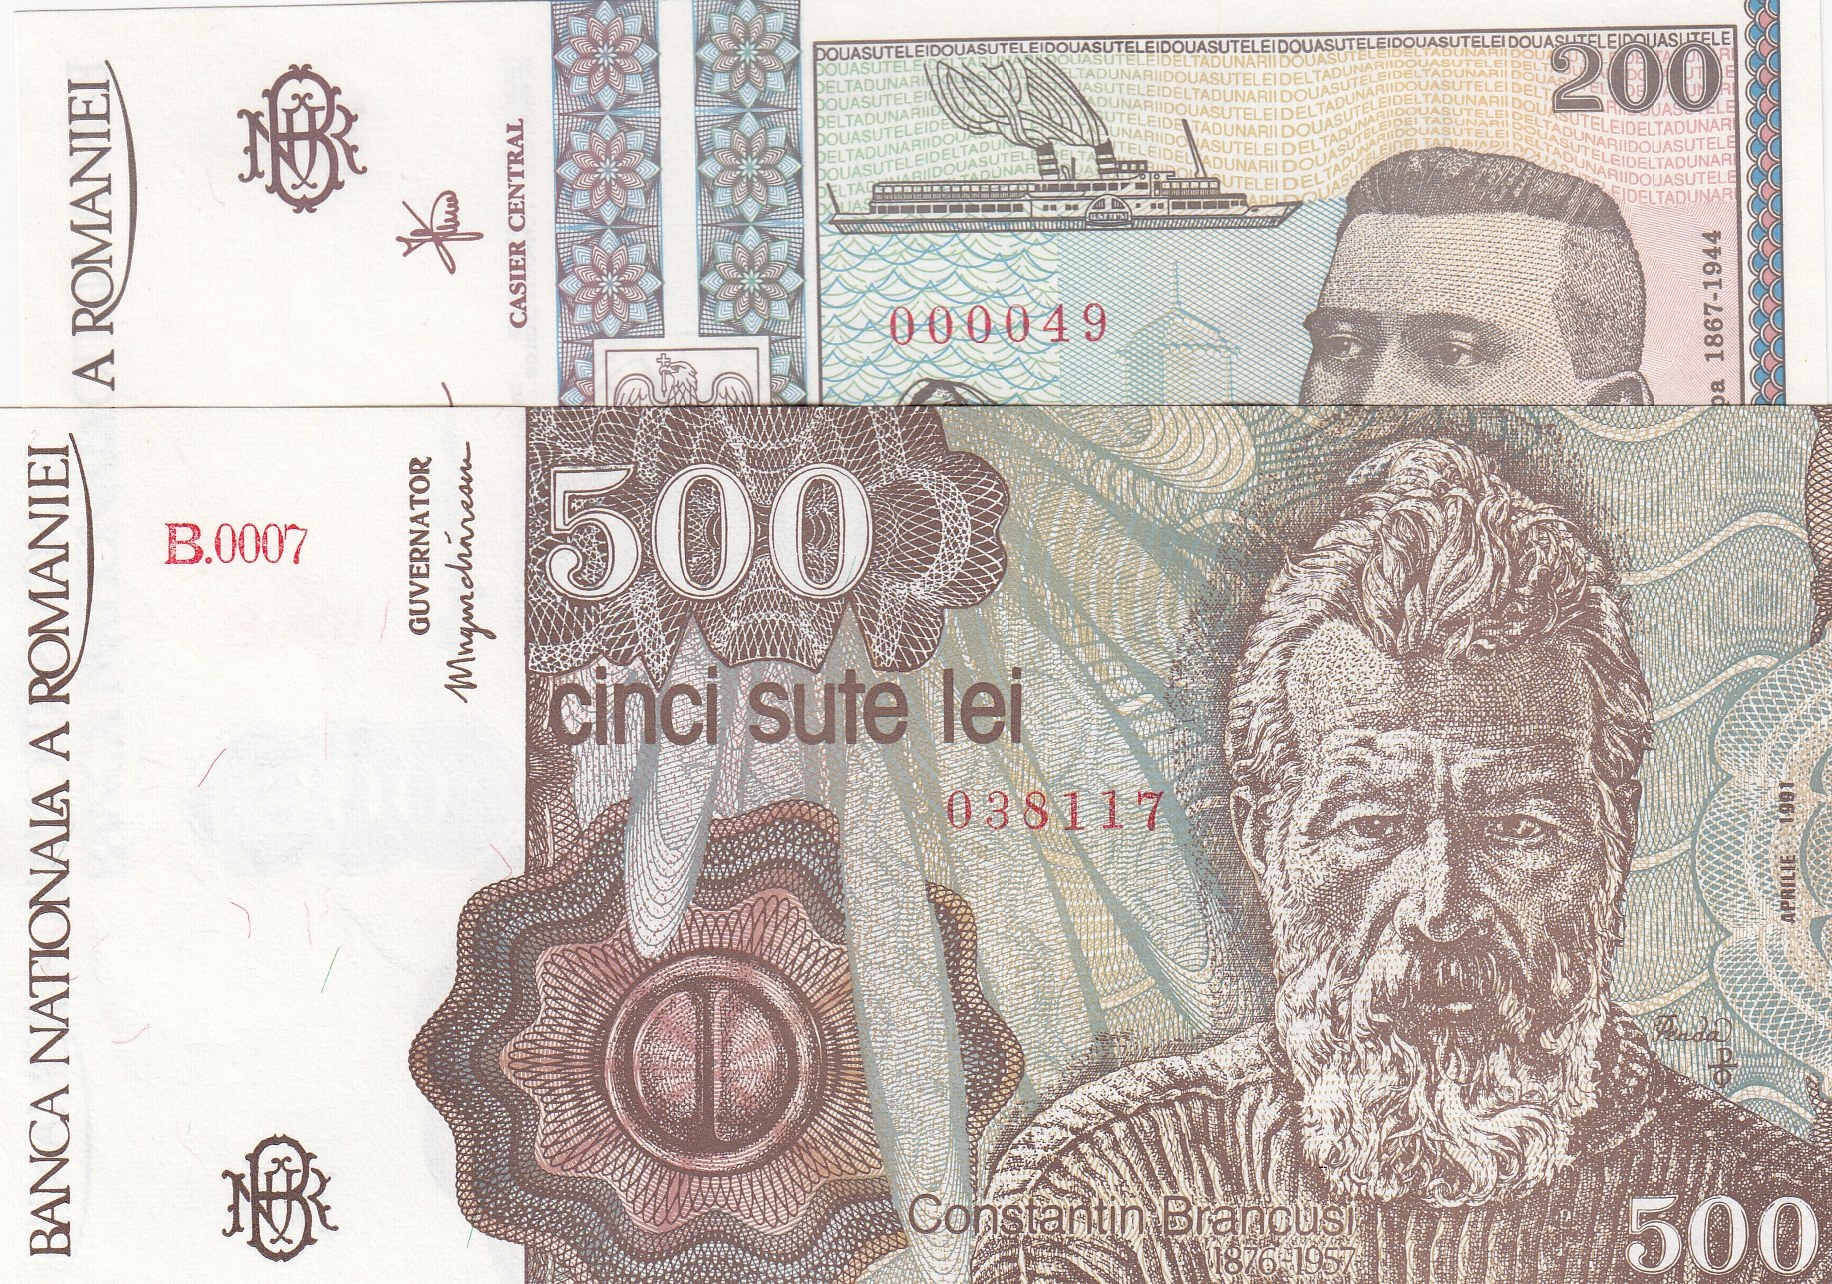 Румынские деньги. 500 Лей. 500 Румынских лей. Банкнота 500 лей Румыния.